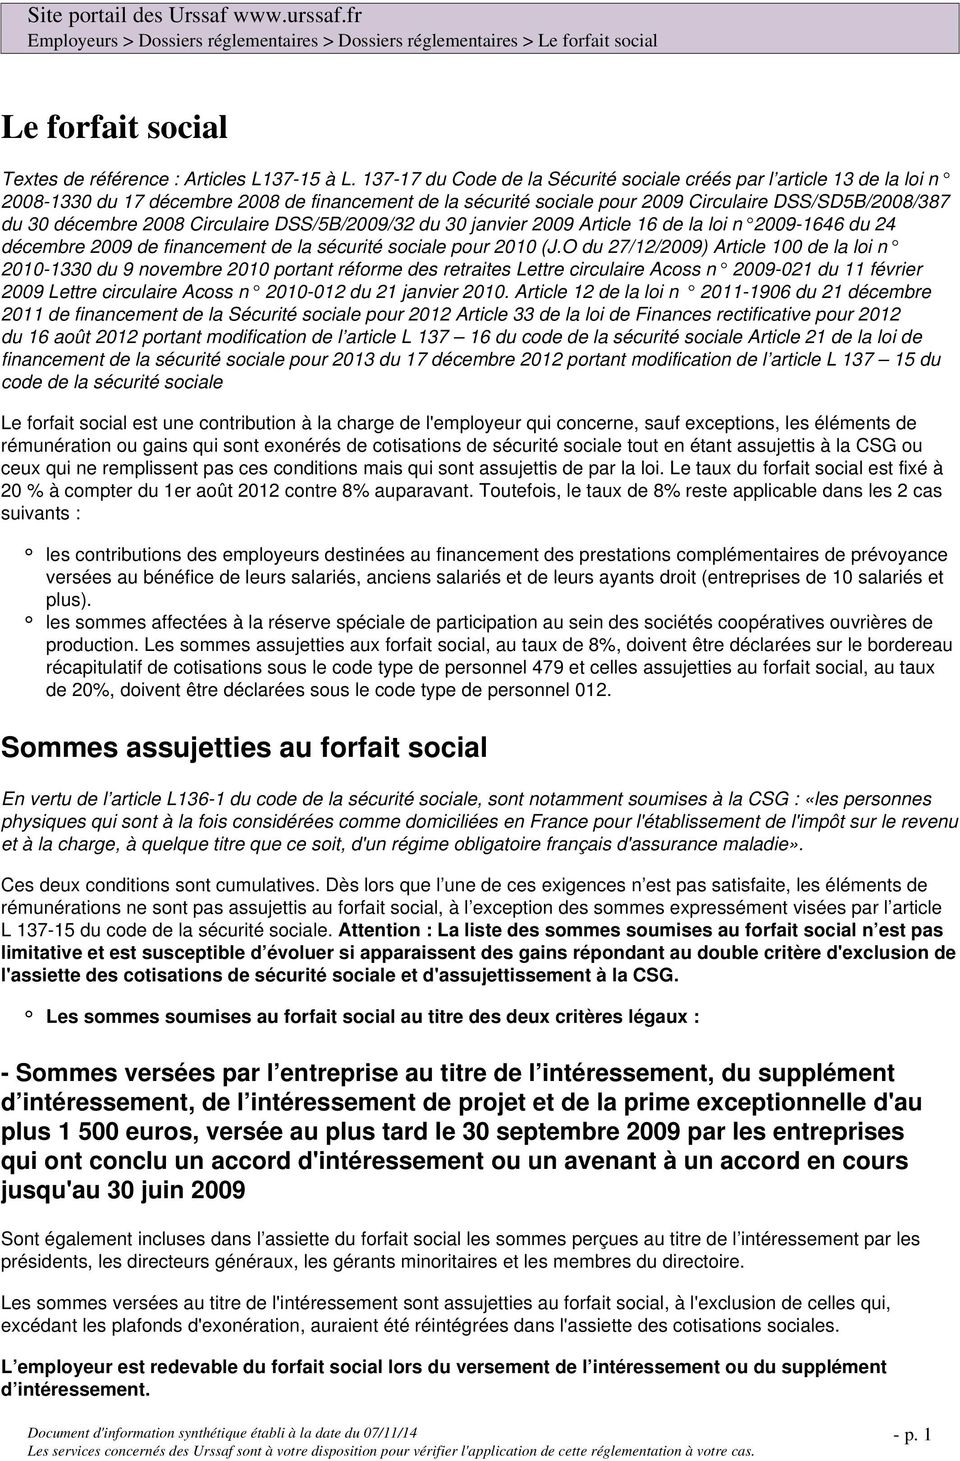 Circulaire DSS/5B/2009/32 du 30 janvier 2009 Article 16 de la loi n 2009-1646 du 24 décembre 2009 de financement de la sécurité sociale pour 2010 (J.